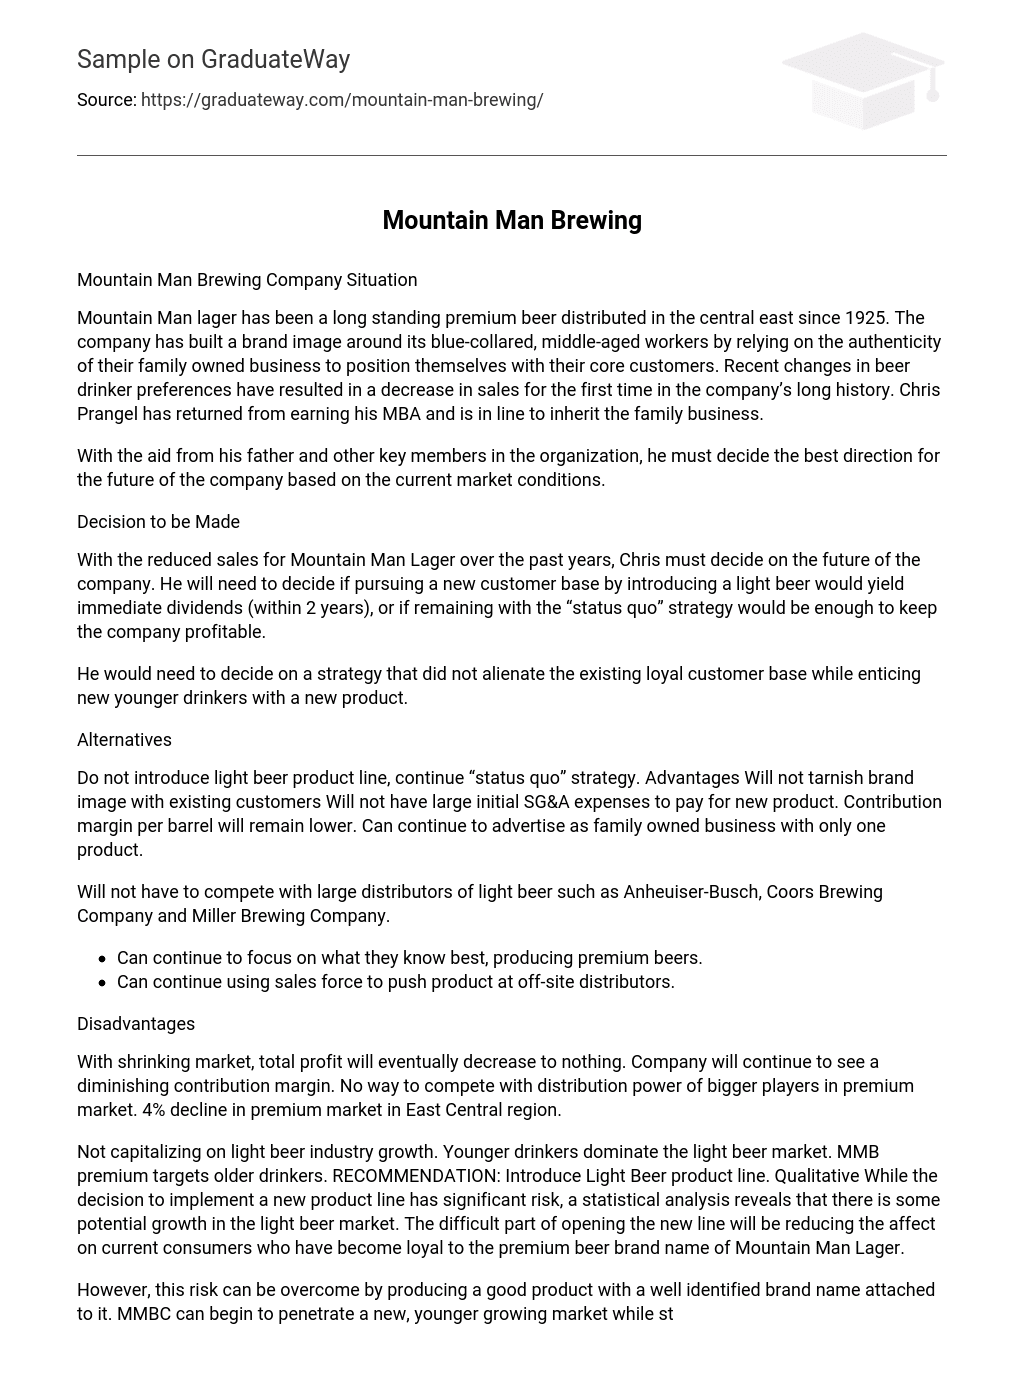 Mountain Man Brewing Analysis